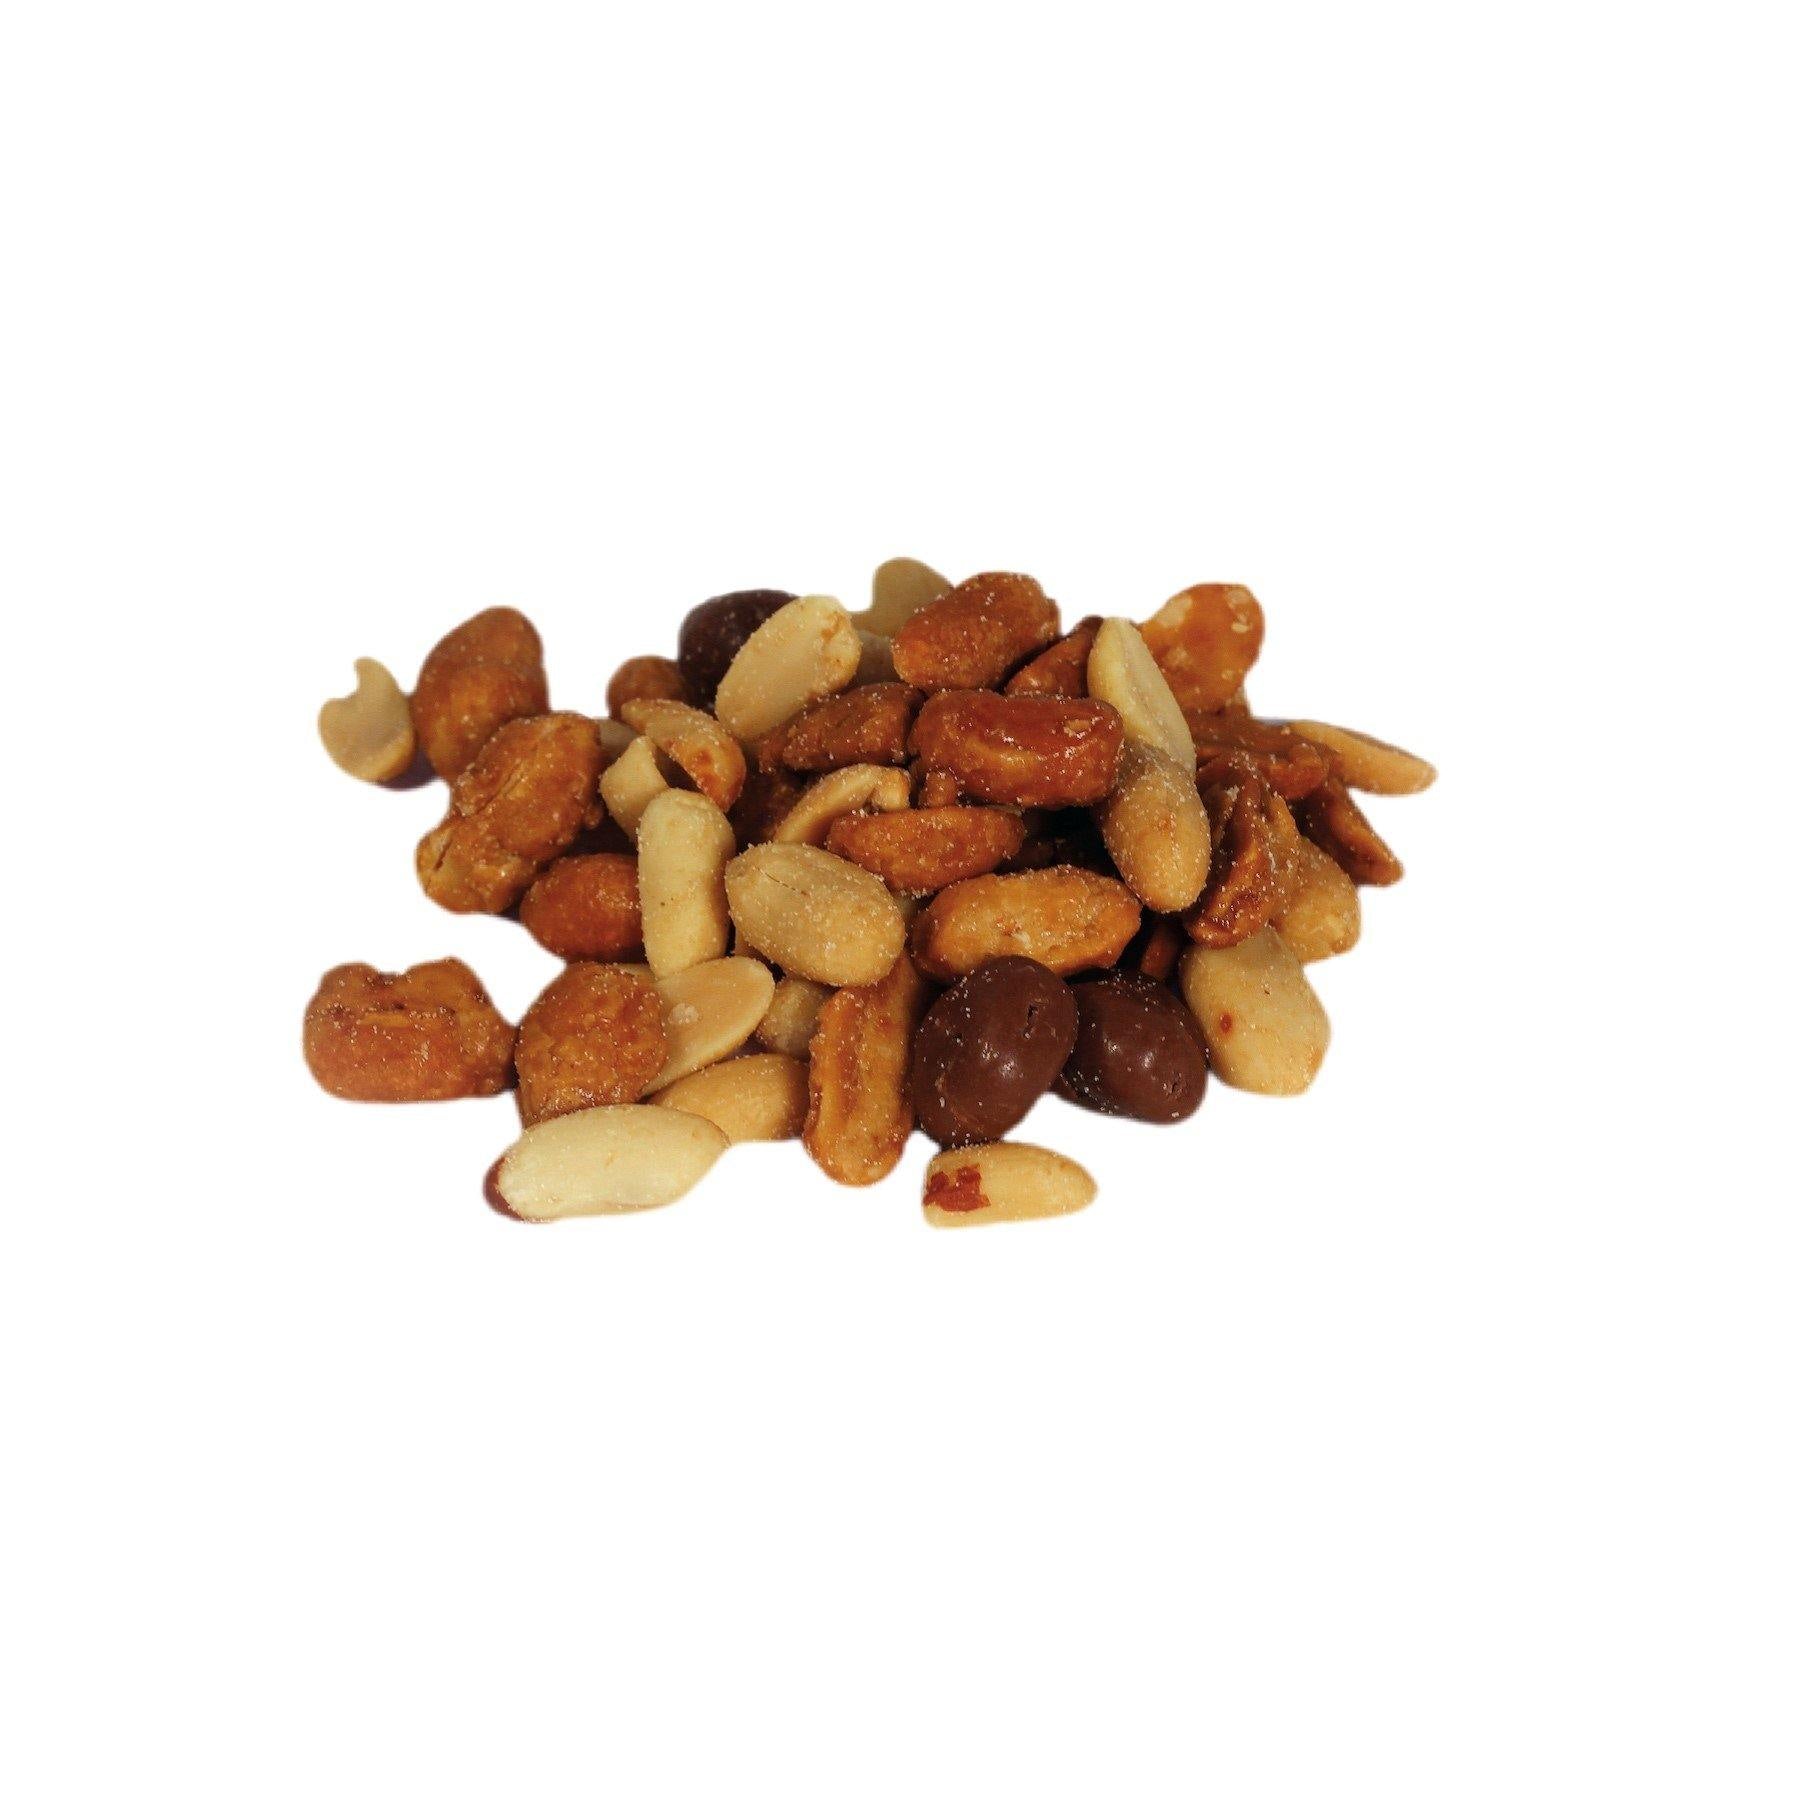 Salted Caramelised Peanuts & Chocolate Raisins - The Dormen Food Company